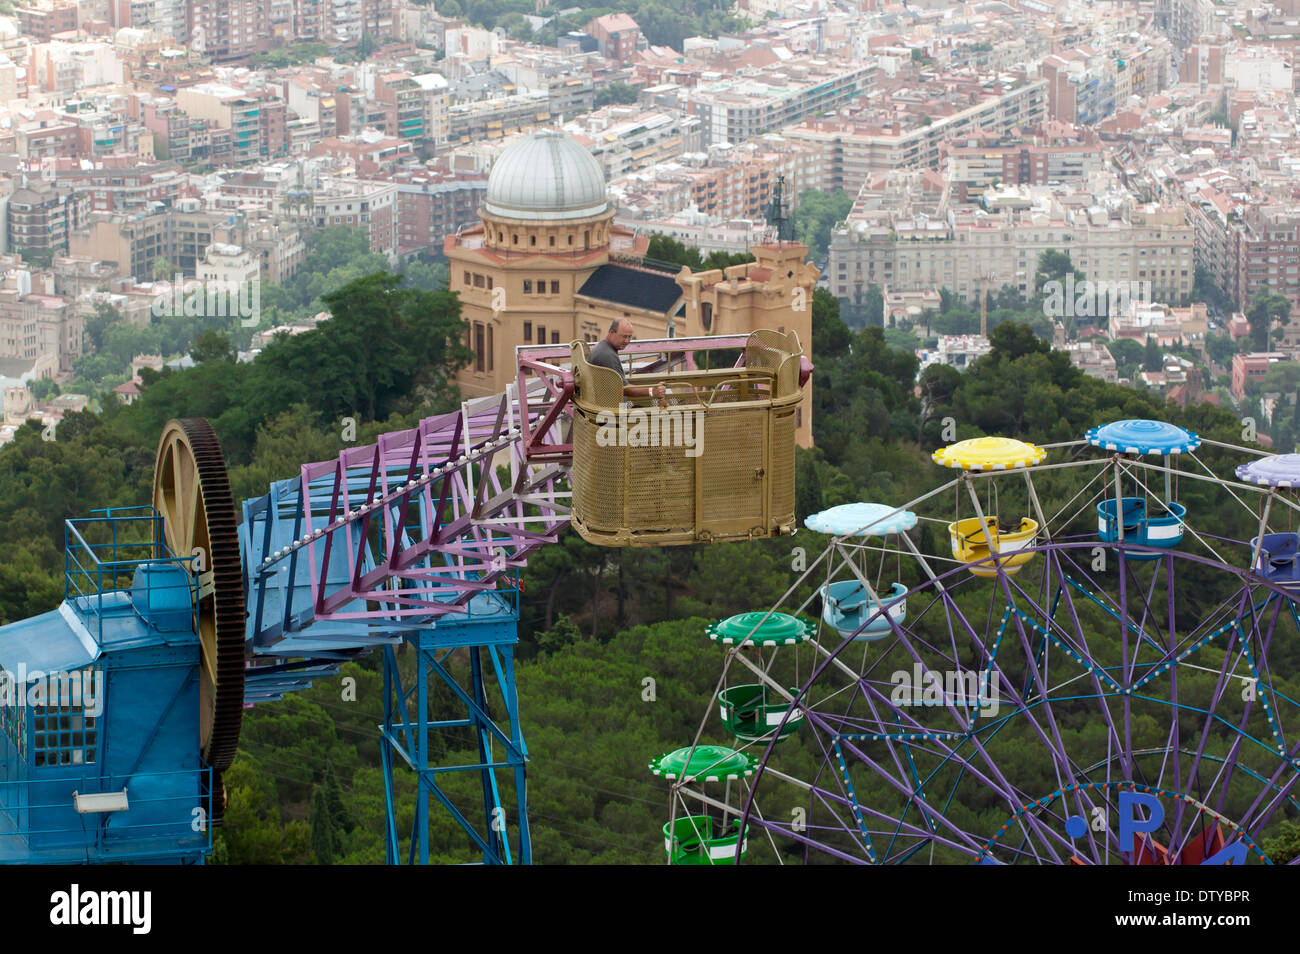 Vue aérienne de l'Atalaya ride et la grande roue dans le parc d'attractions du Tibidabo, Barcelone, Espagne. Banque D'Images